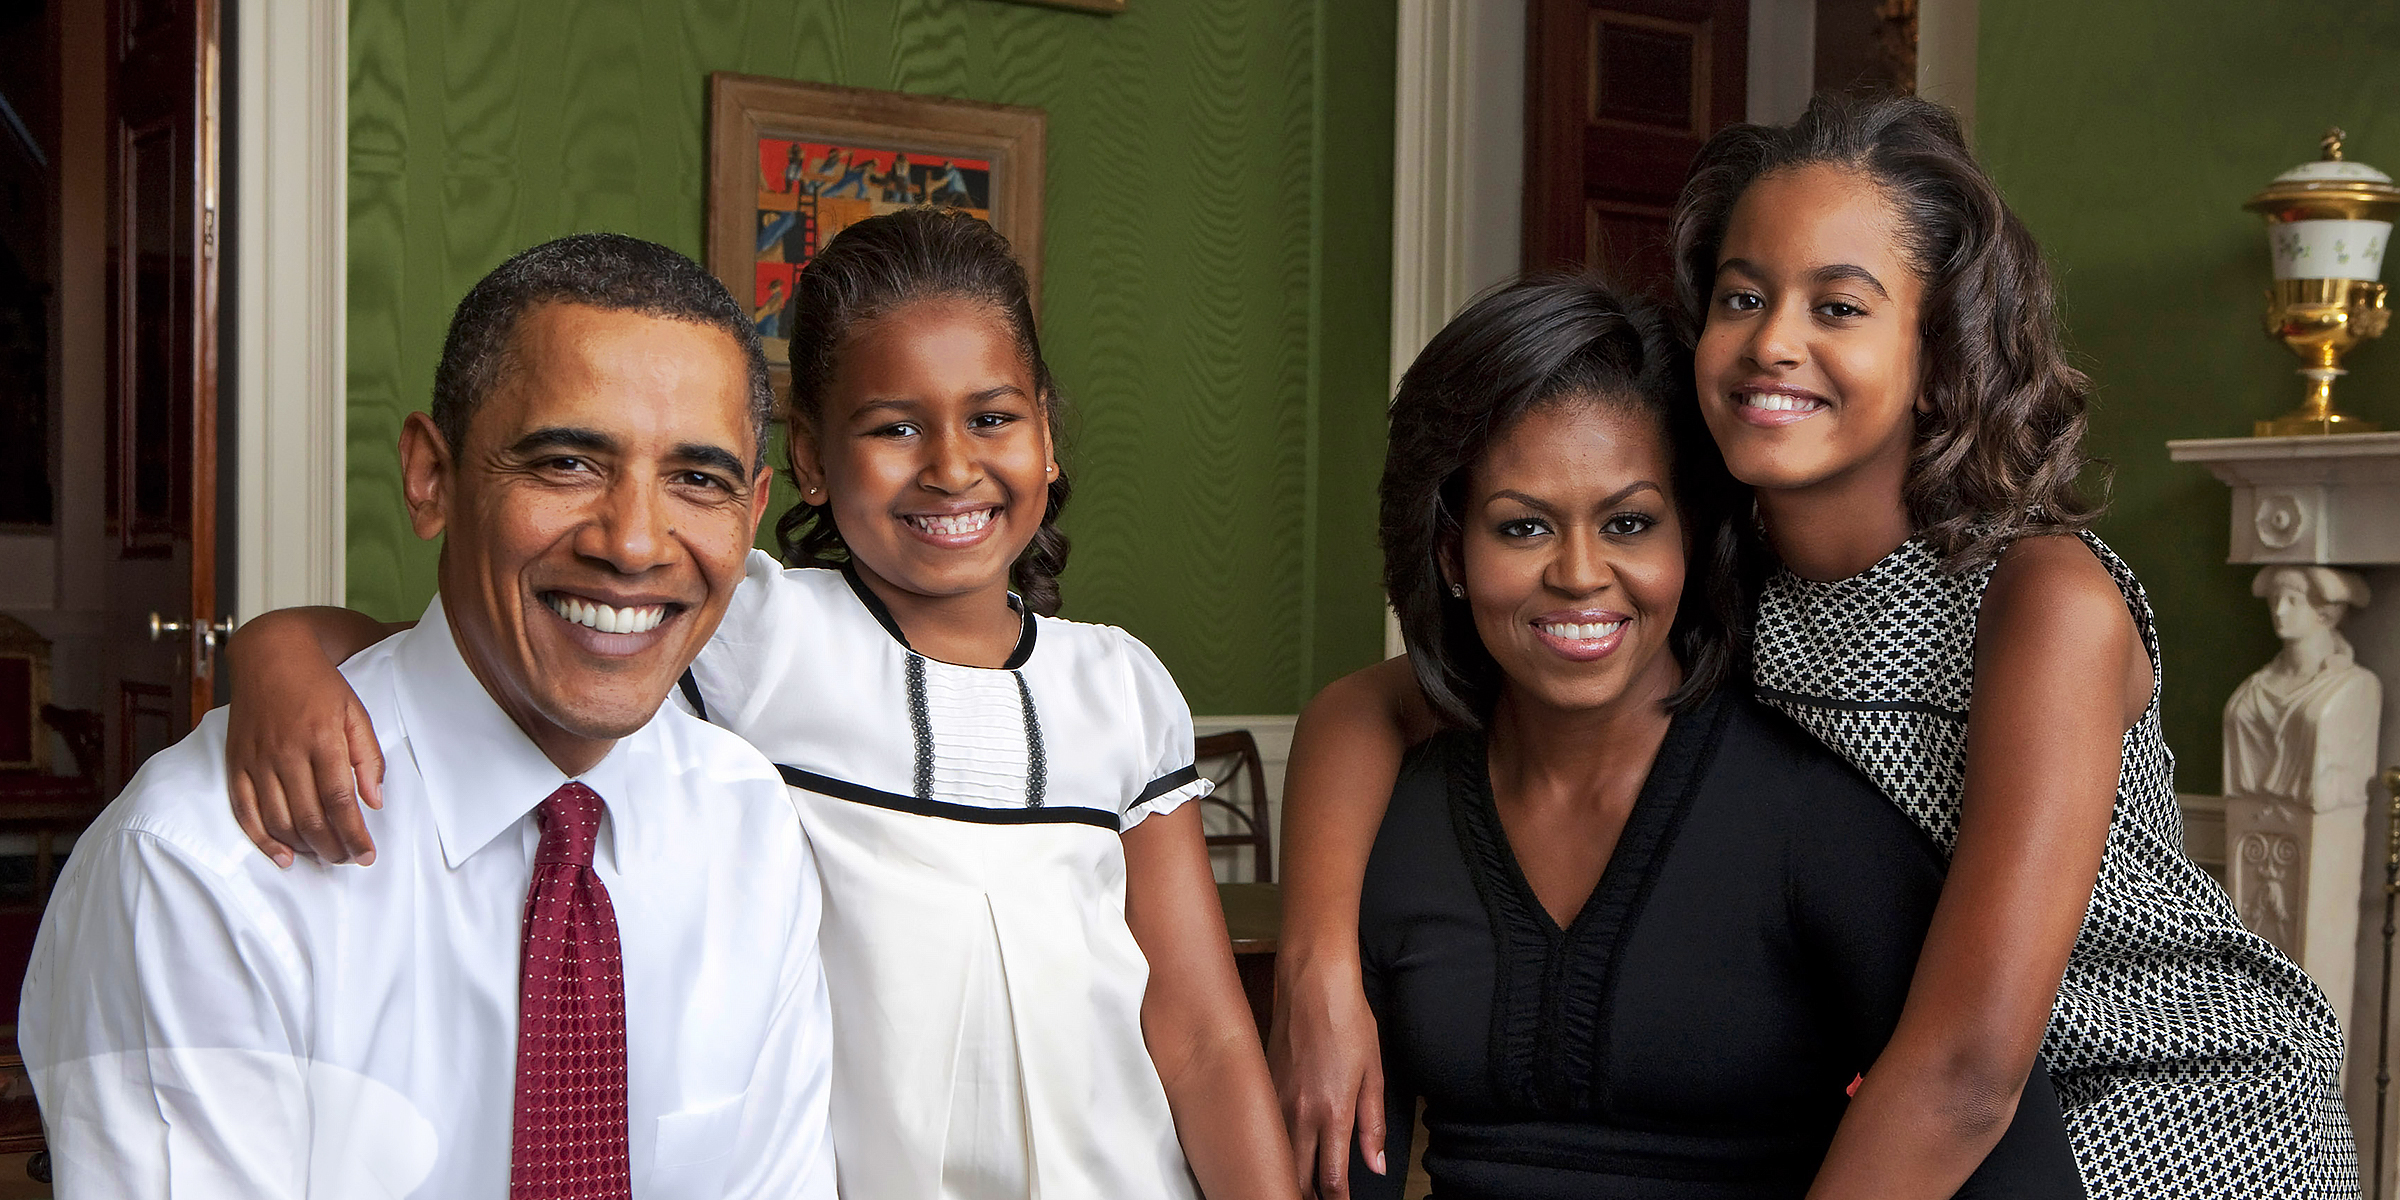 Barack, Sasha, Michelle, and Malia Obama | Source: Getty Images